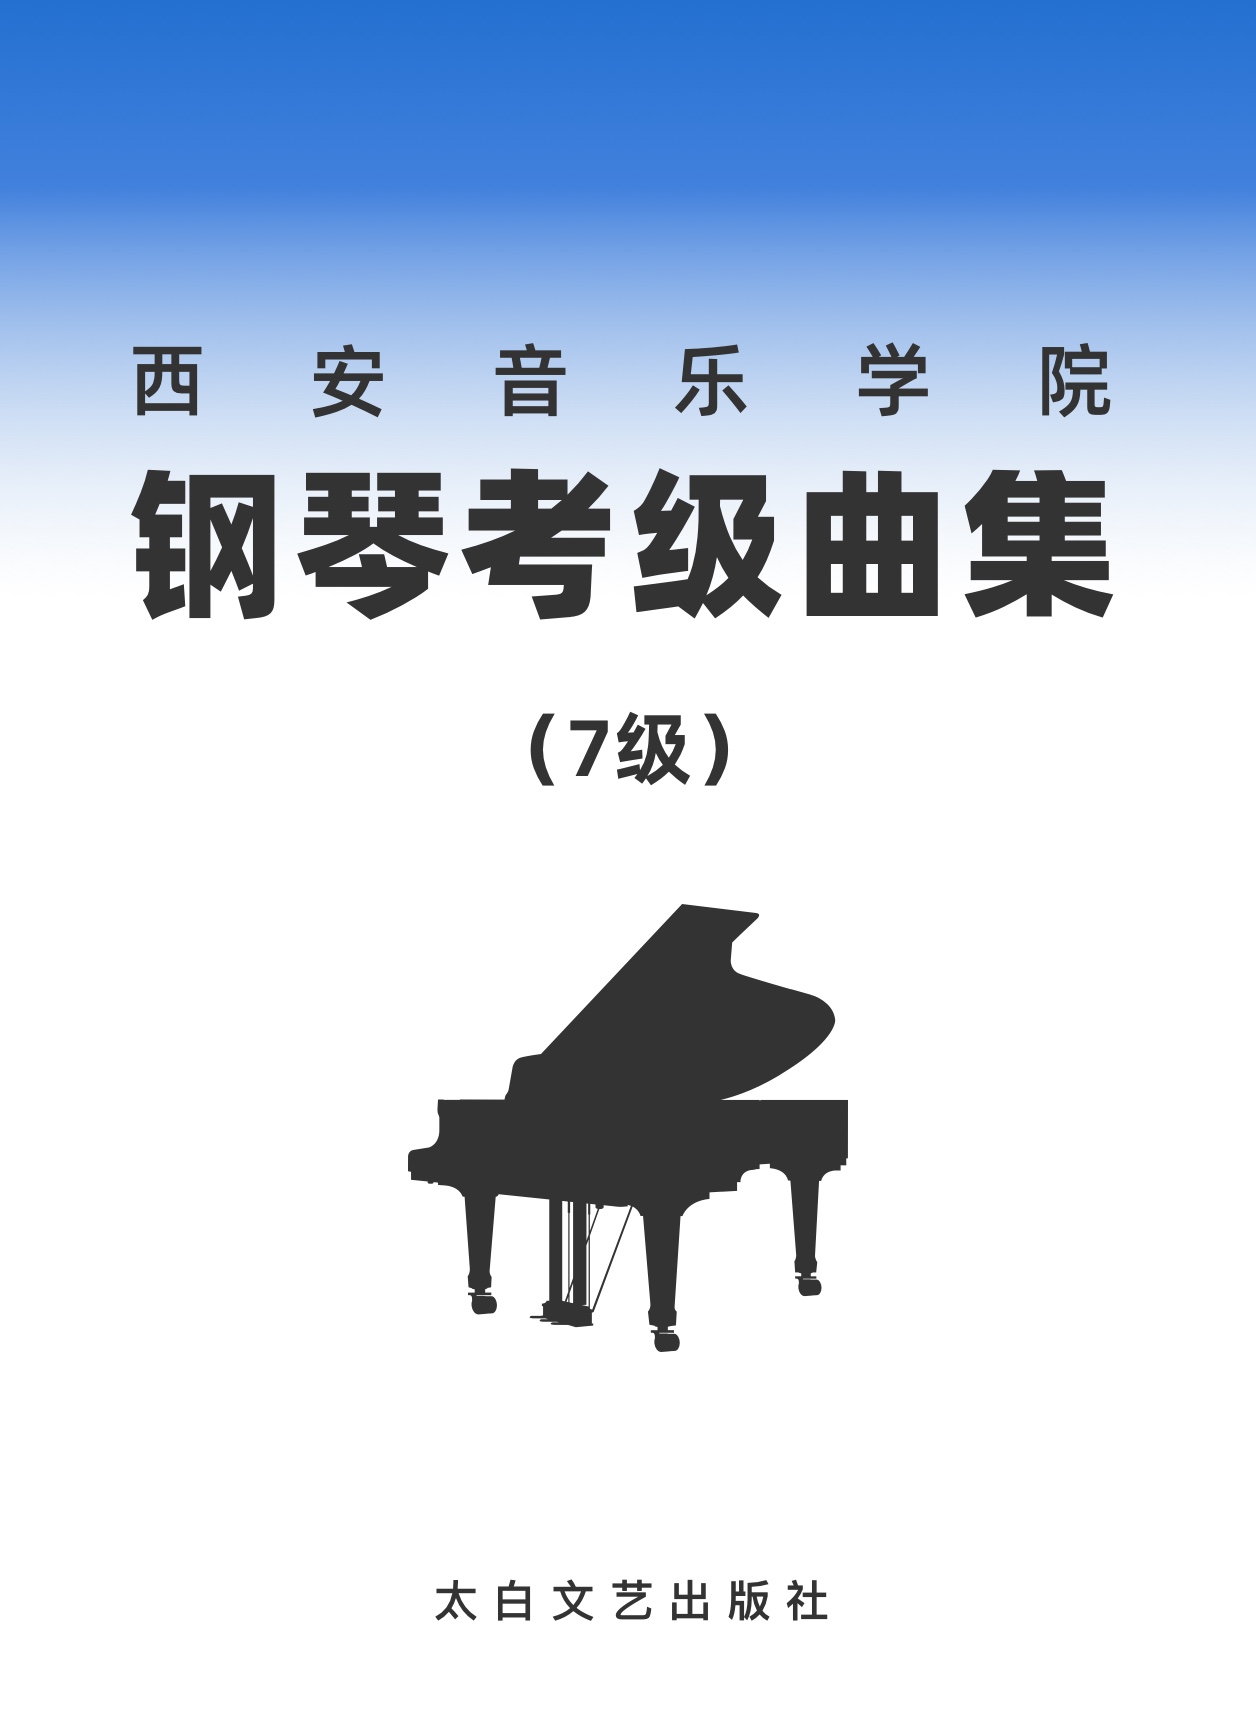 13第七级 练习曲一钢琴简谱 数字双手